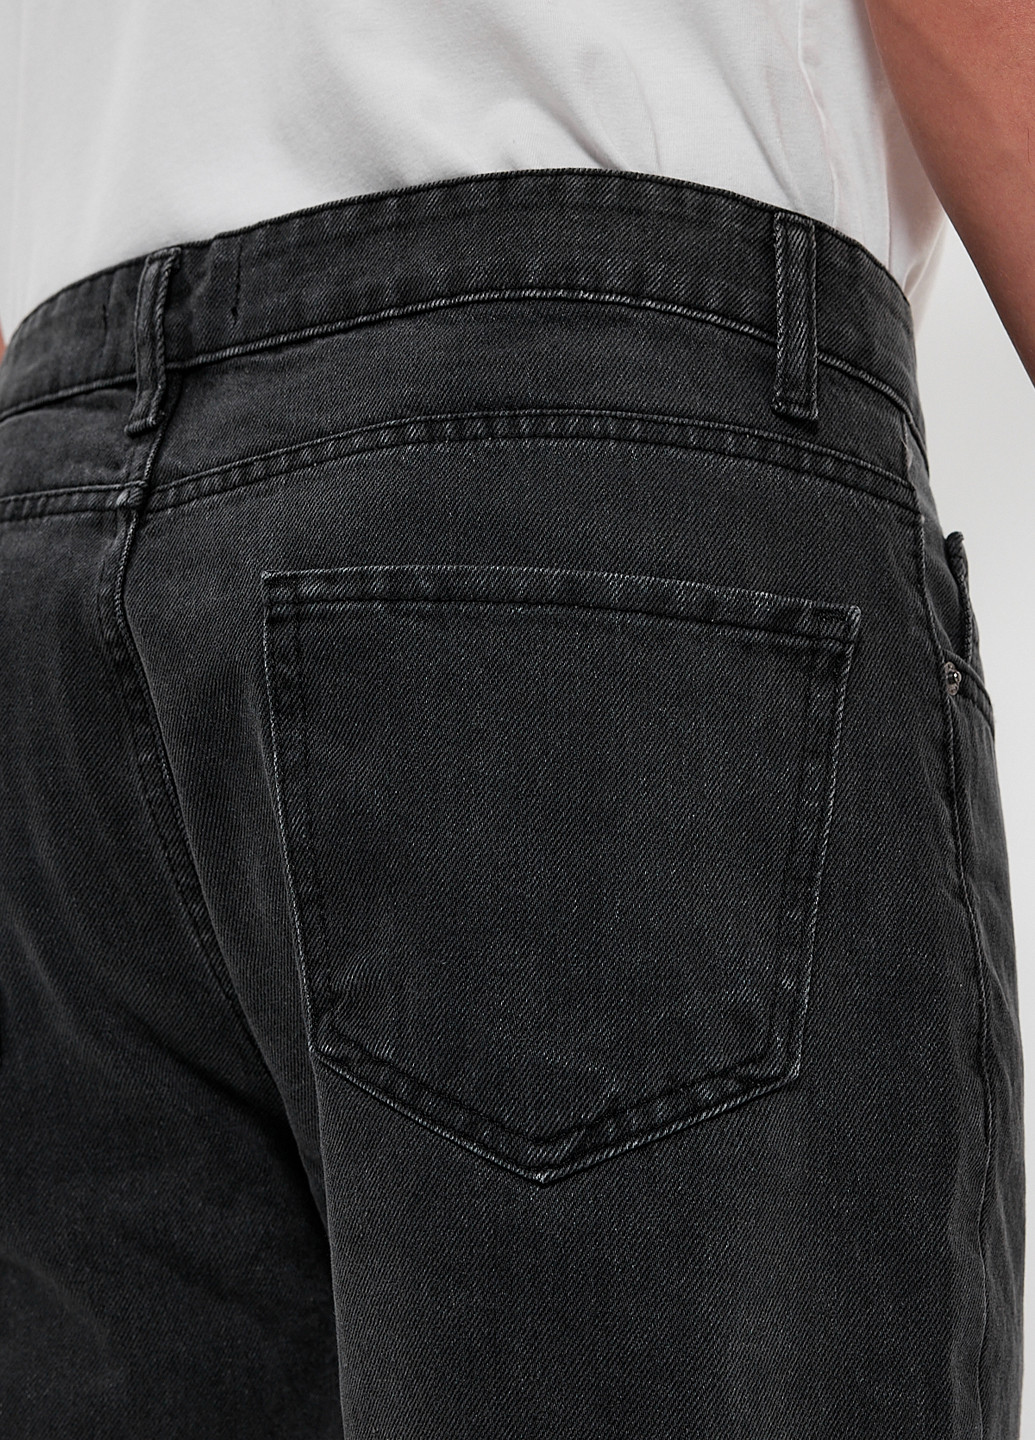 Темно-серые демисезонные мом фит джинсы Trend Collection